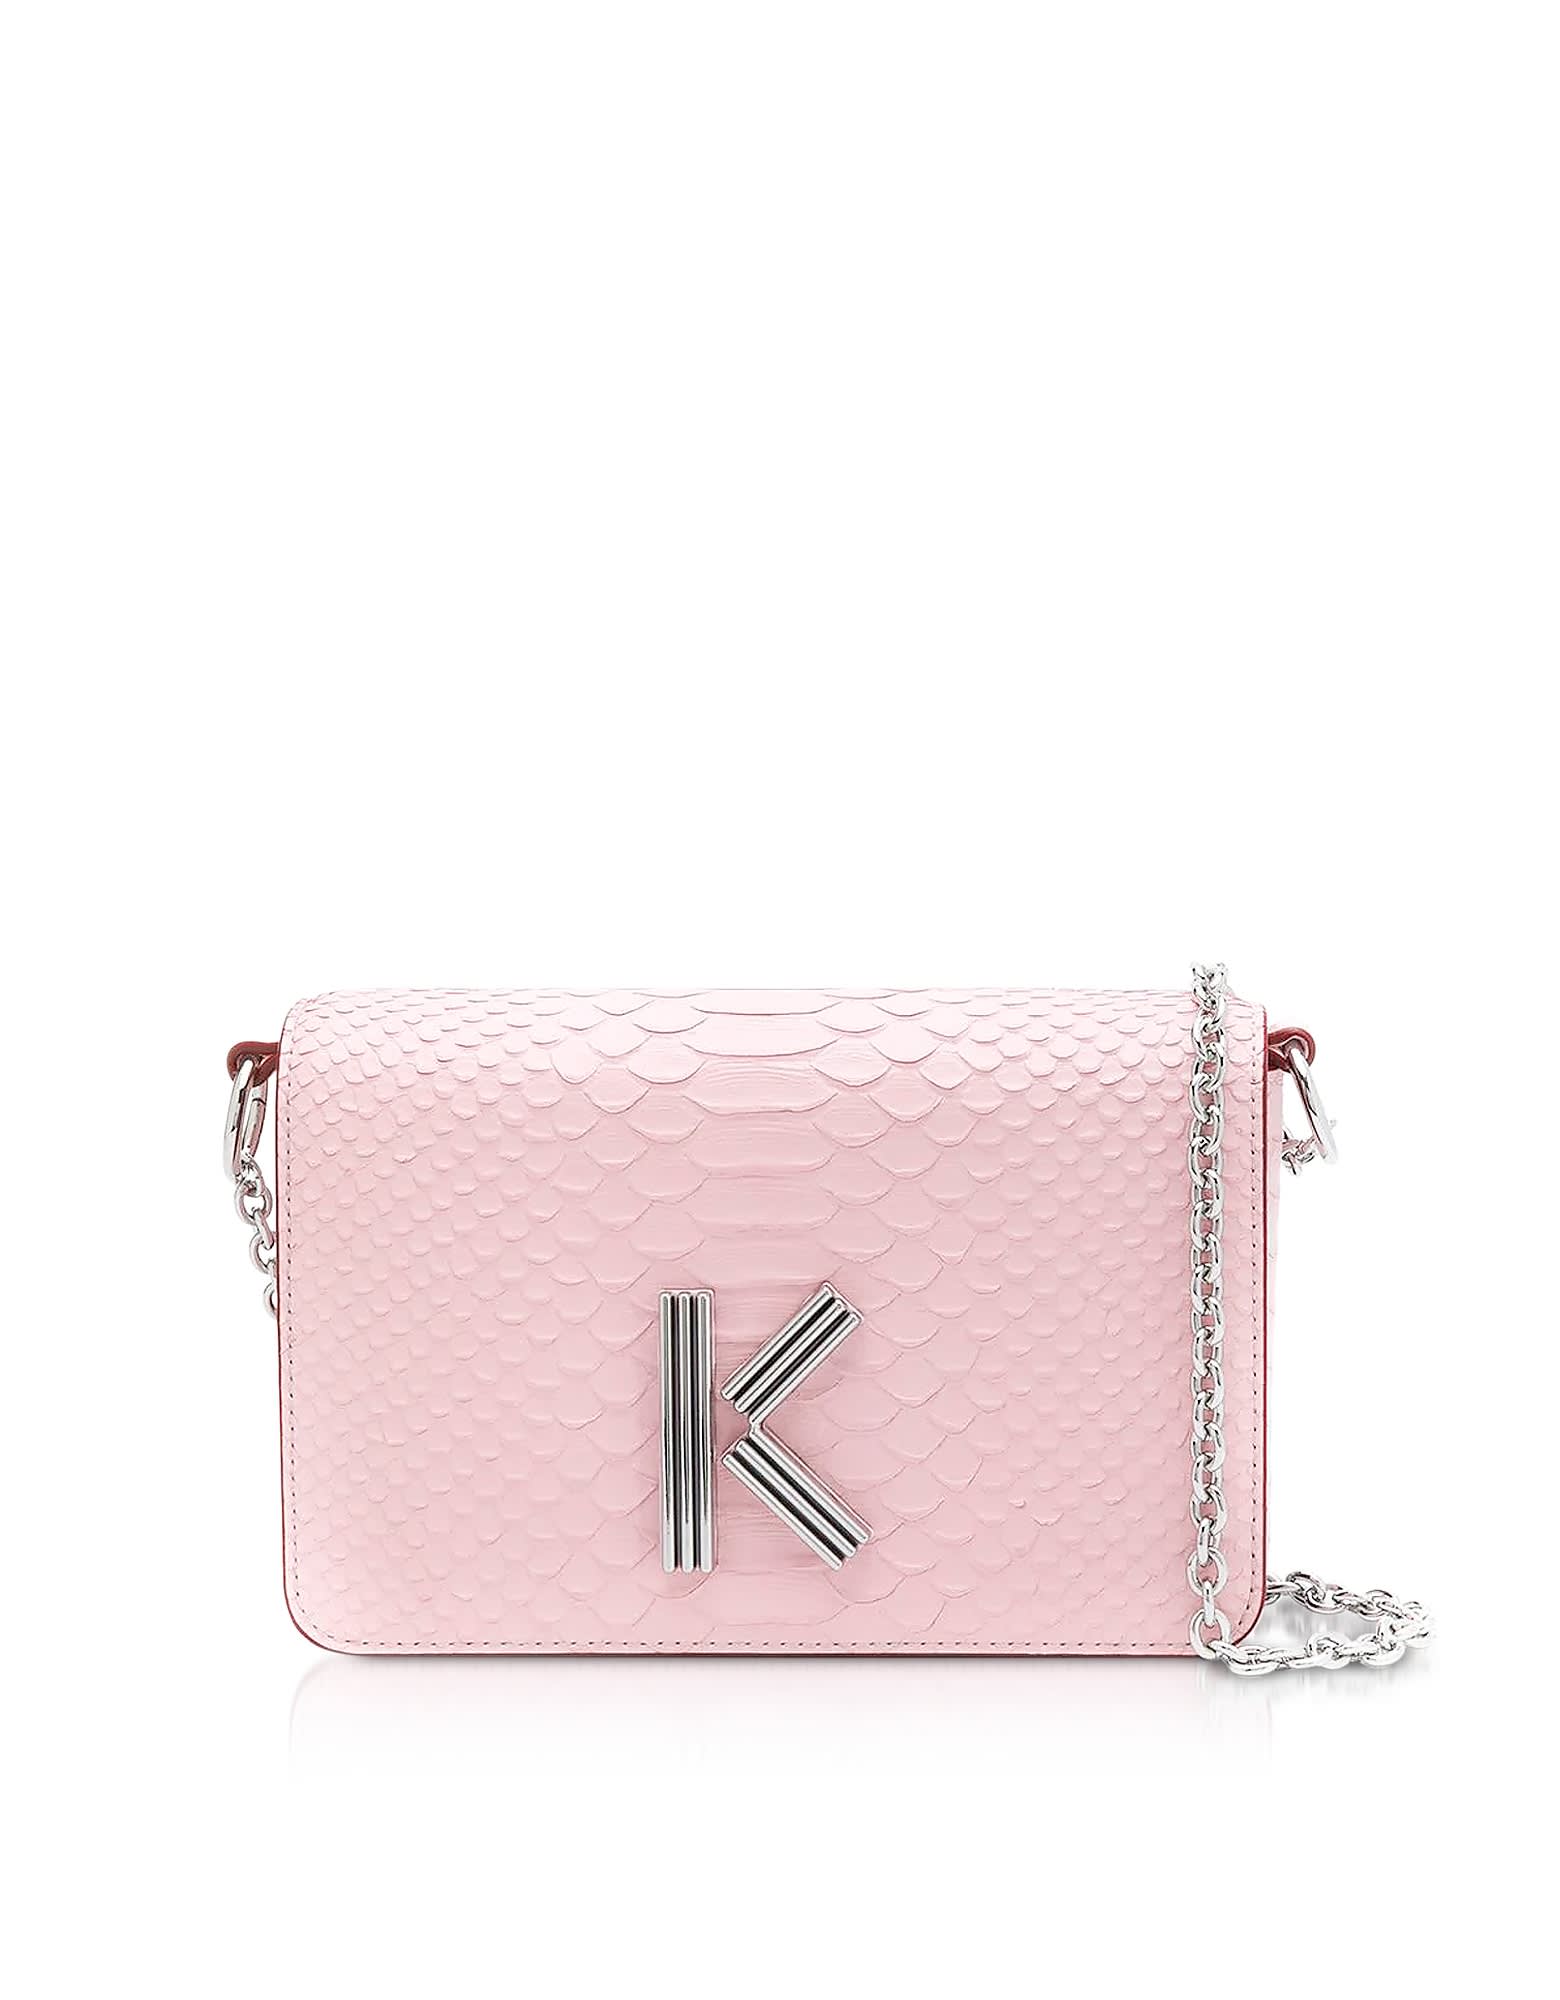 kenzo pink bag